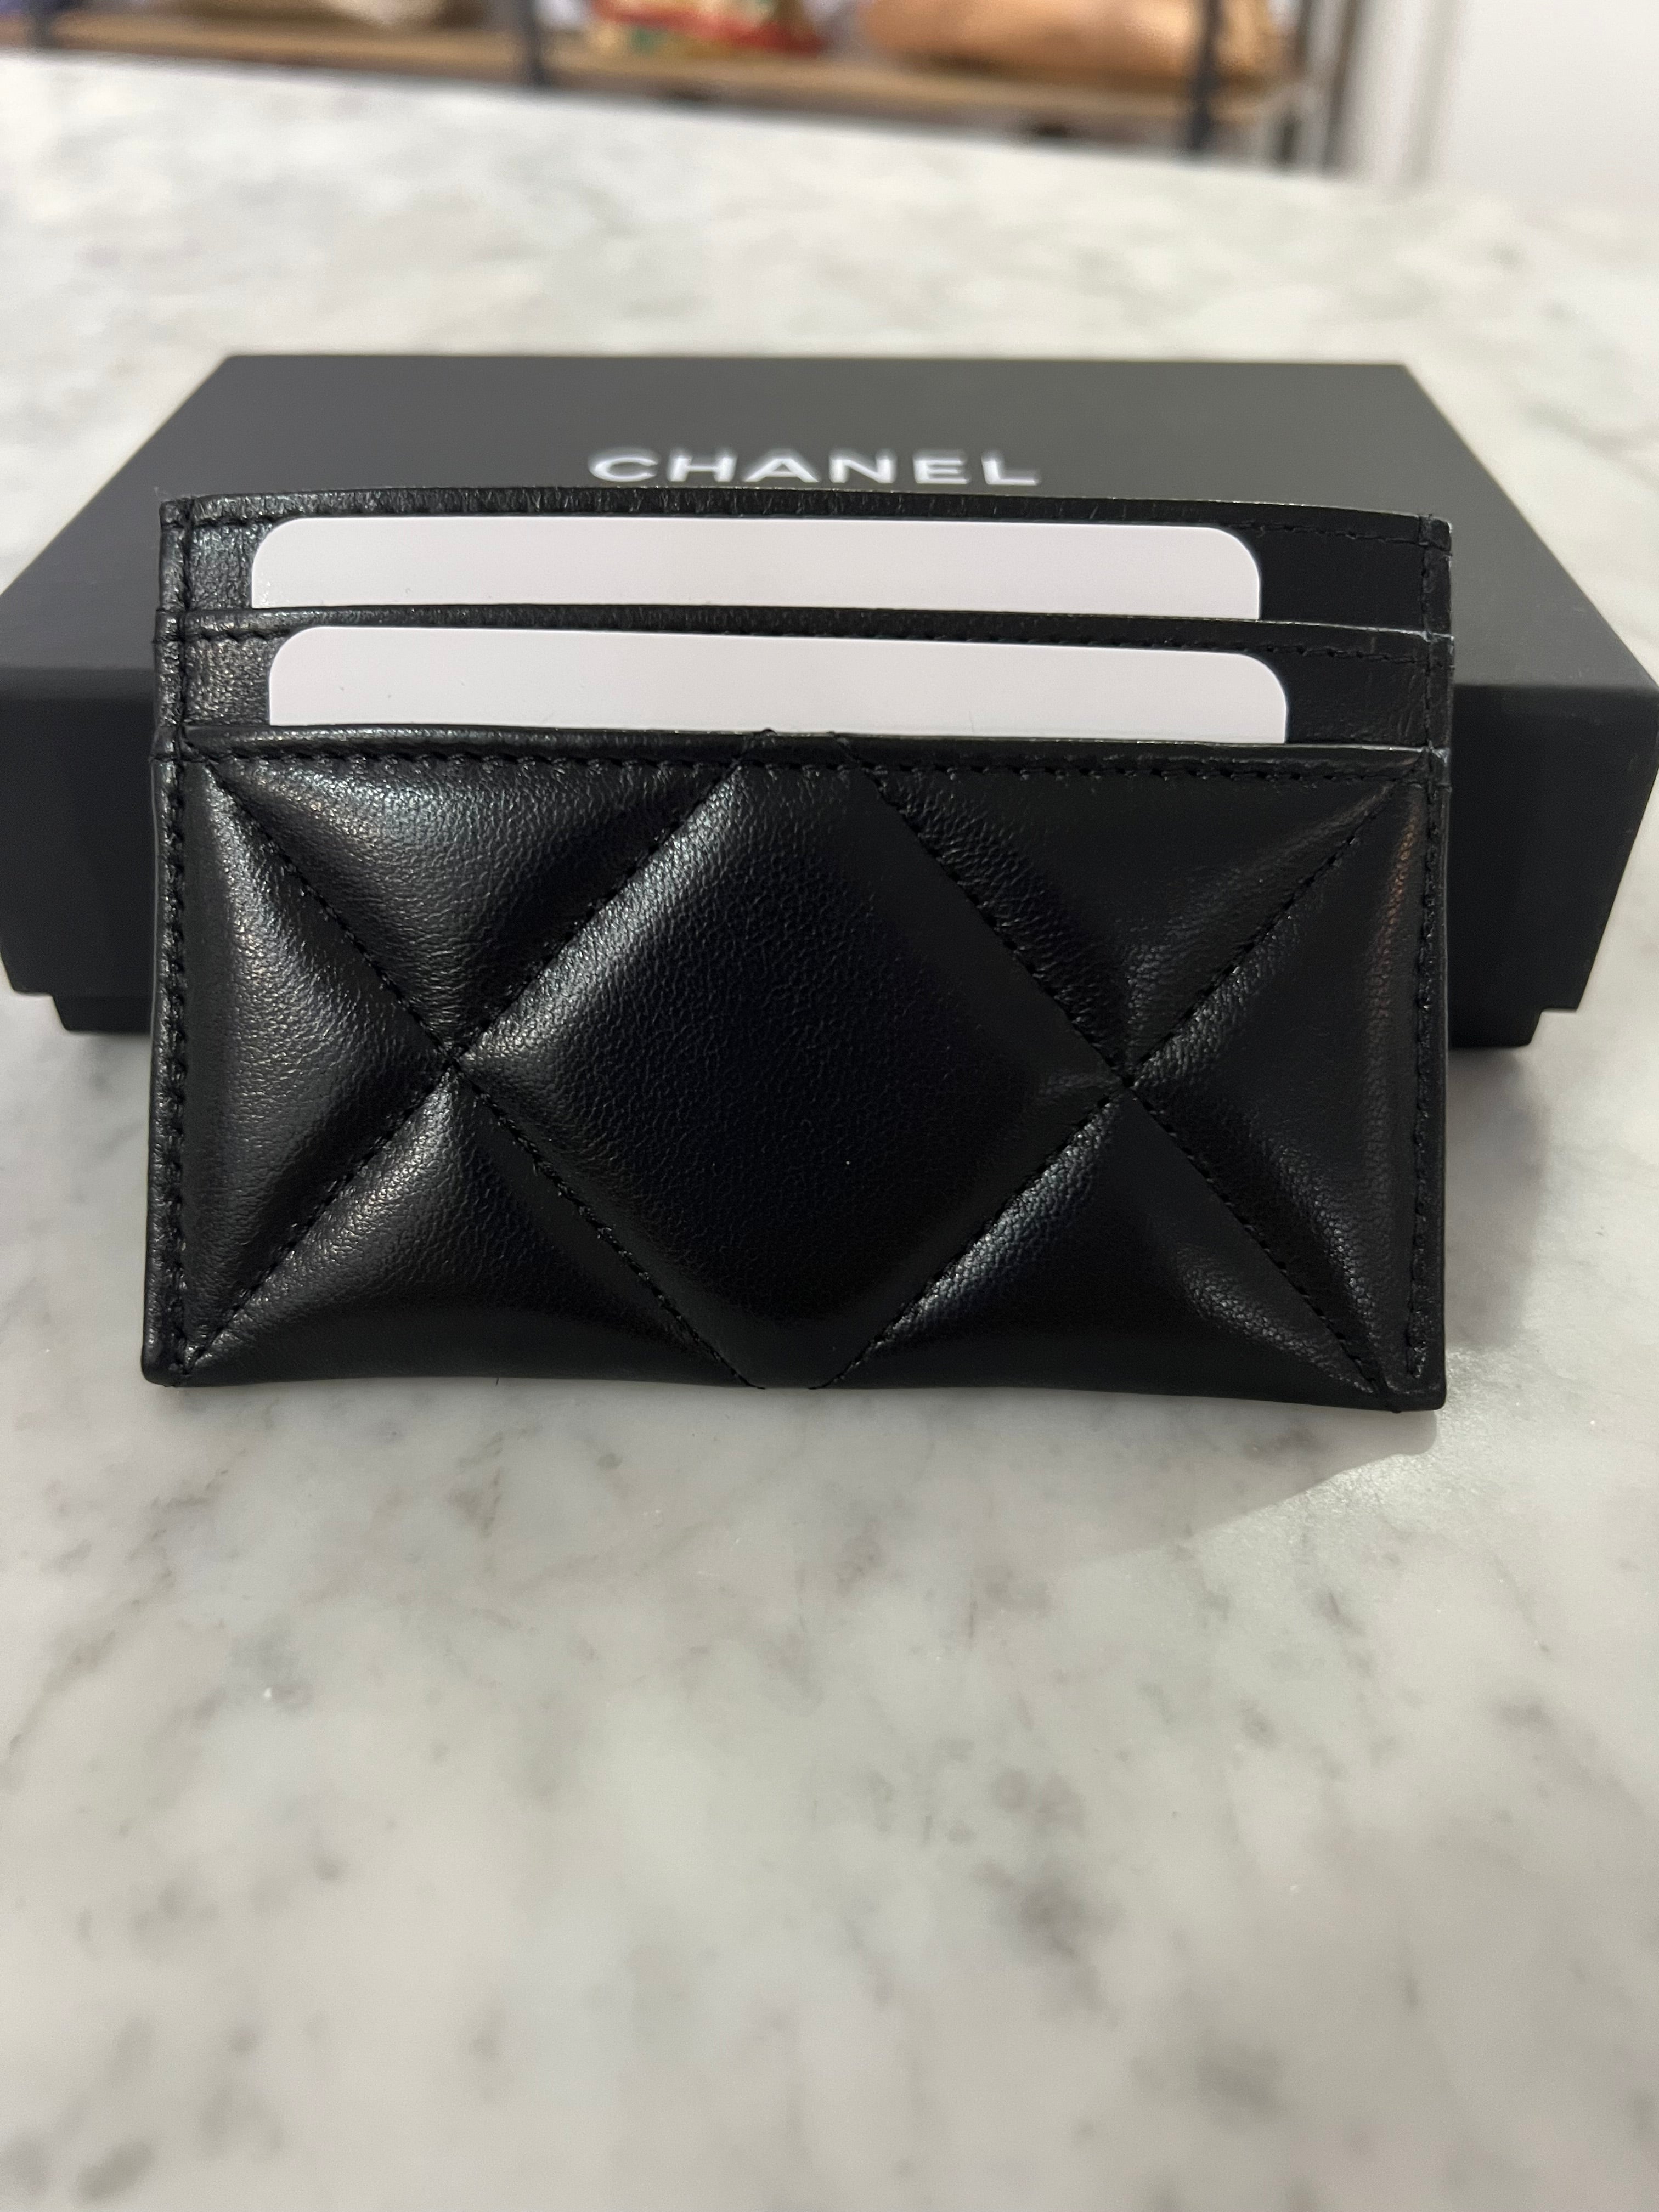 Chanel 19 Card Holder BNIB